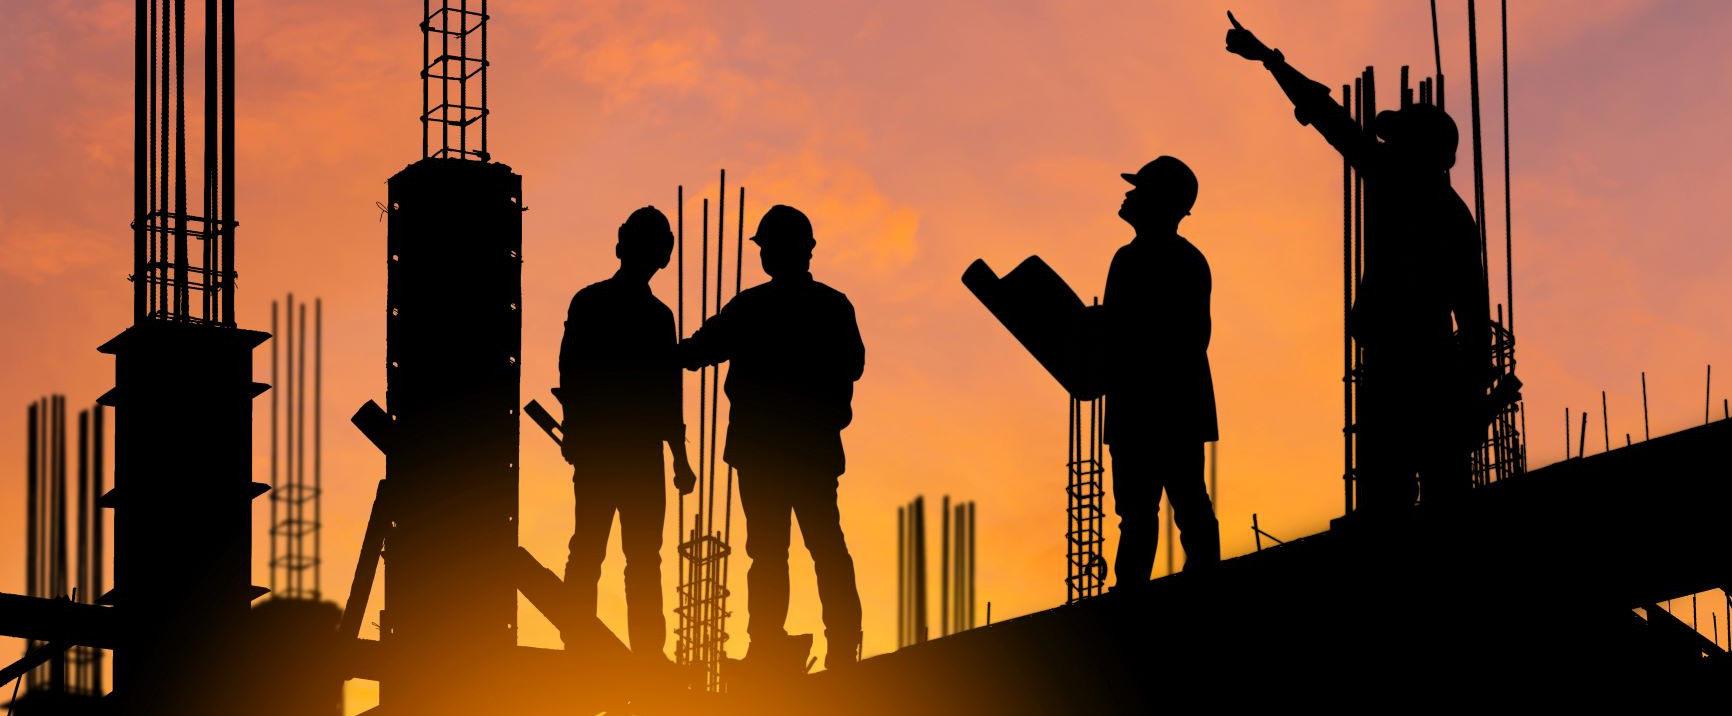 image shows construction labourers